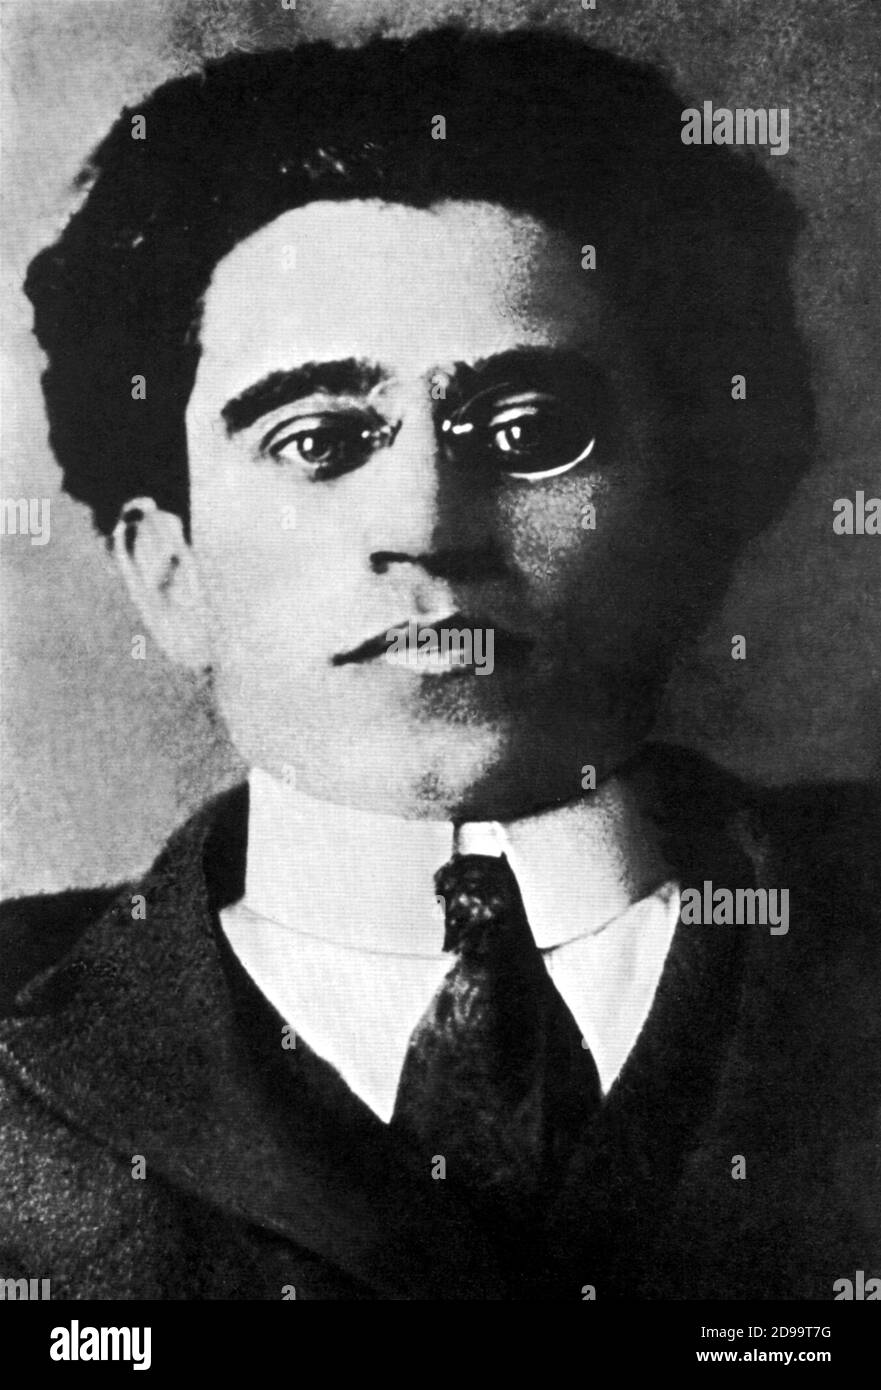 Der italienische Politiker und Intellektuelle ANTONIO GRAMSCI ( 1891 - 1937 ) - POLITIK - INTELLETTUALE di SINISTRA - PERSEGUITATO - vittima del FASCISMO - PSI - PARTITO SOCIALISTA ITALIANO - ANTIFASCISTA - ANTIFASCISMO - critico - scrittore - Schriftsteller - occhiali - Gläser pince-nez - Kragen - colletto - cravatta - Krawatte - ritratto - Portrait ---- Archivio GBB Stockfoto